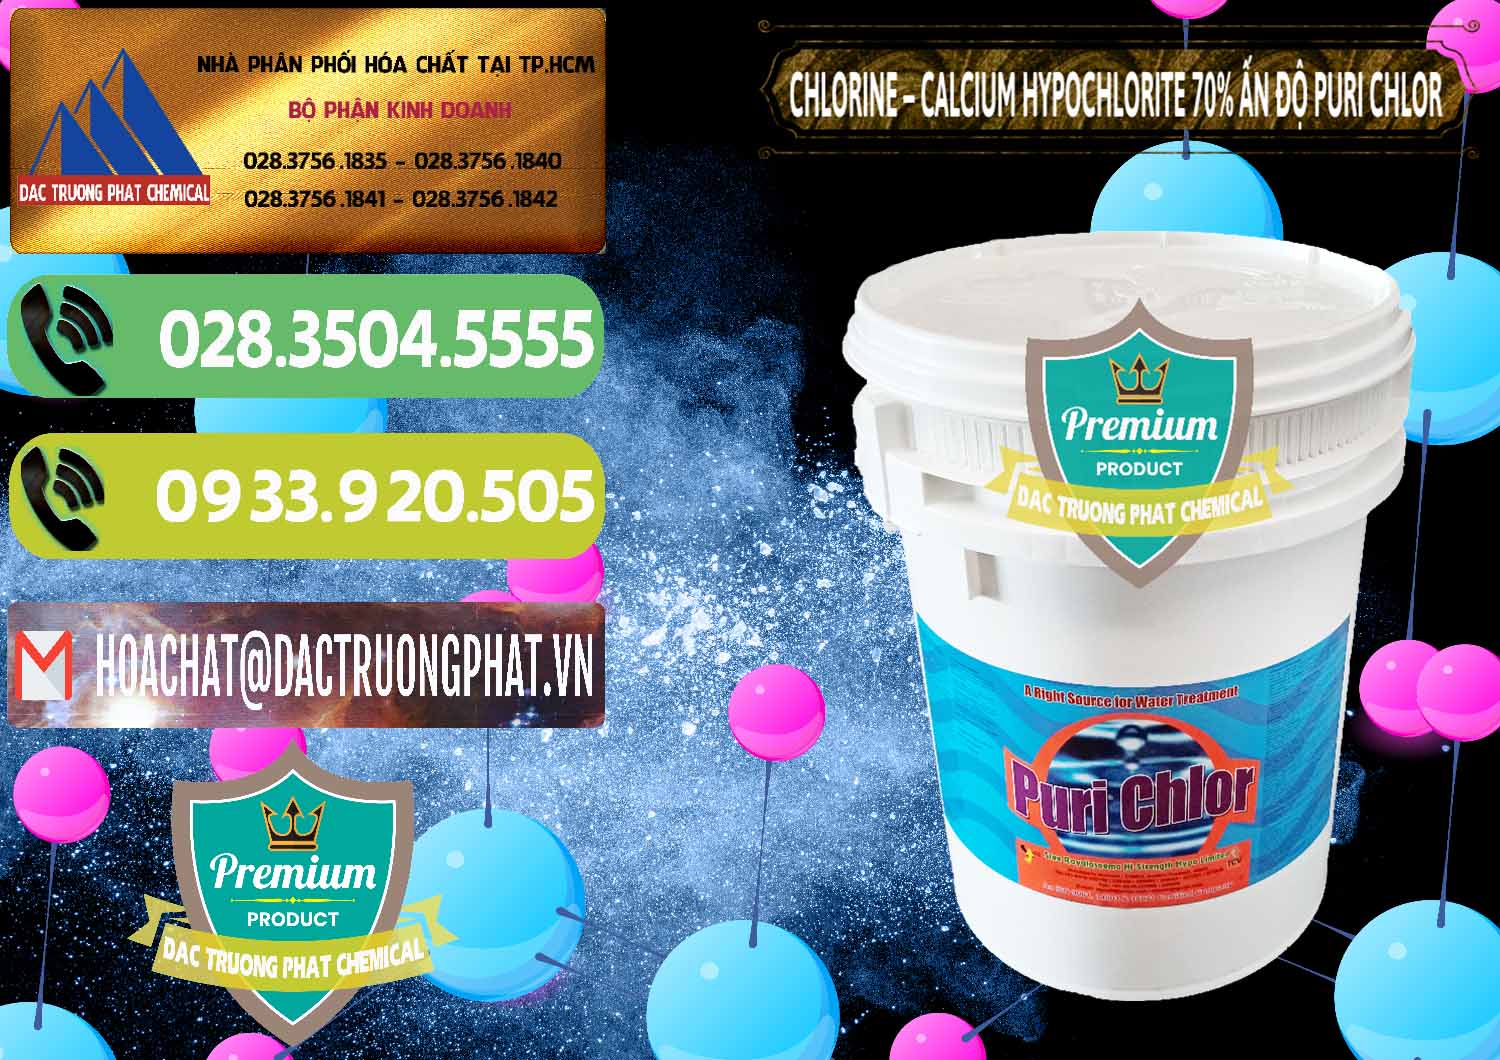 Chuyên cung ứng - bán Chlorine – Clorin 70% Puri Chlo Ấn Độ India - 0123 - Cty kinh doanh & cung cấp hóa chất tại TP.HCM - hoachatmientay.vn